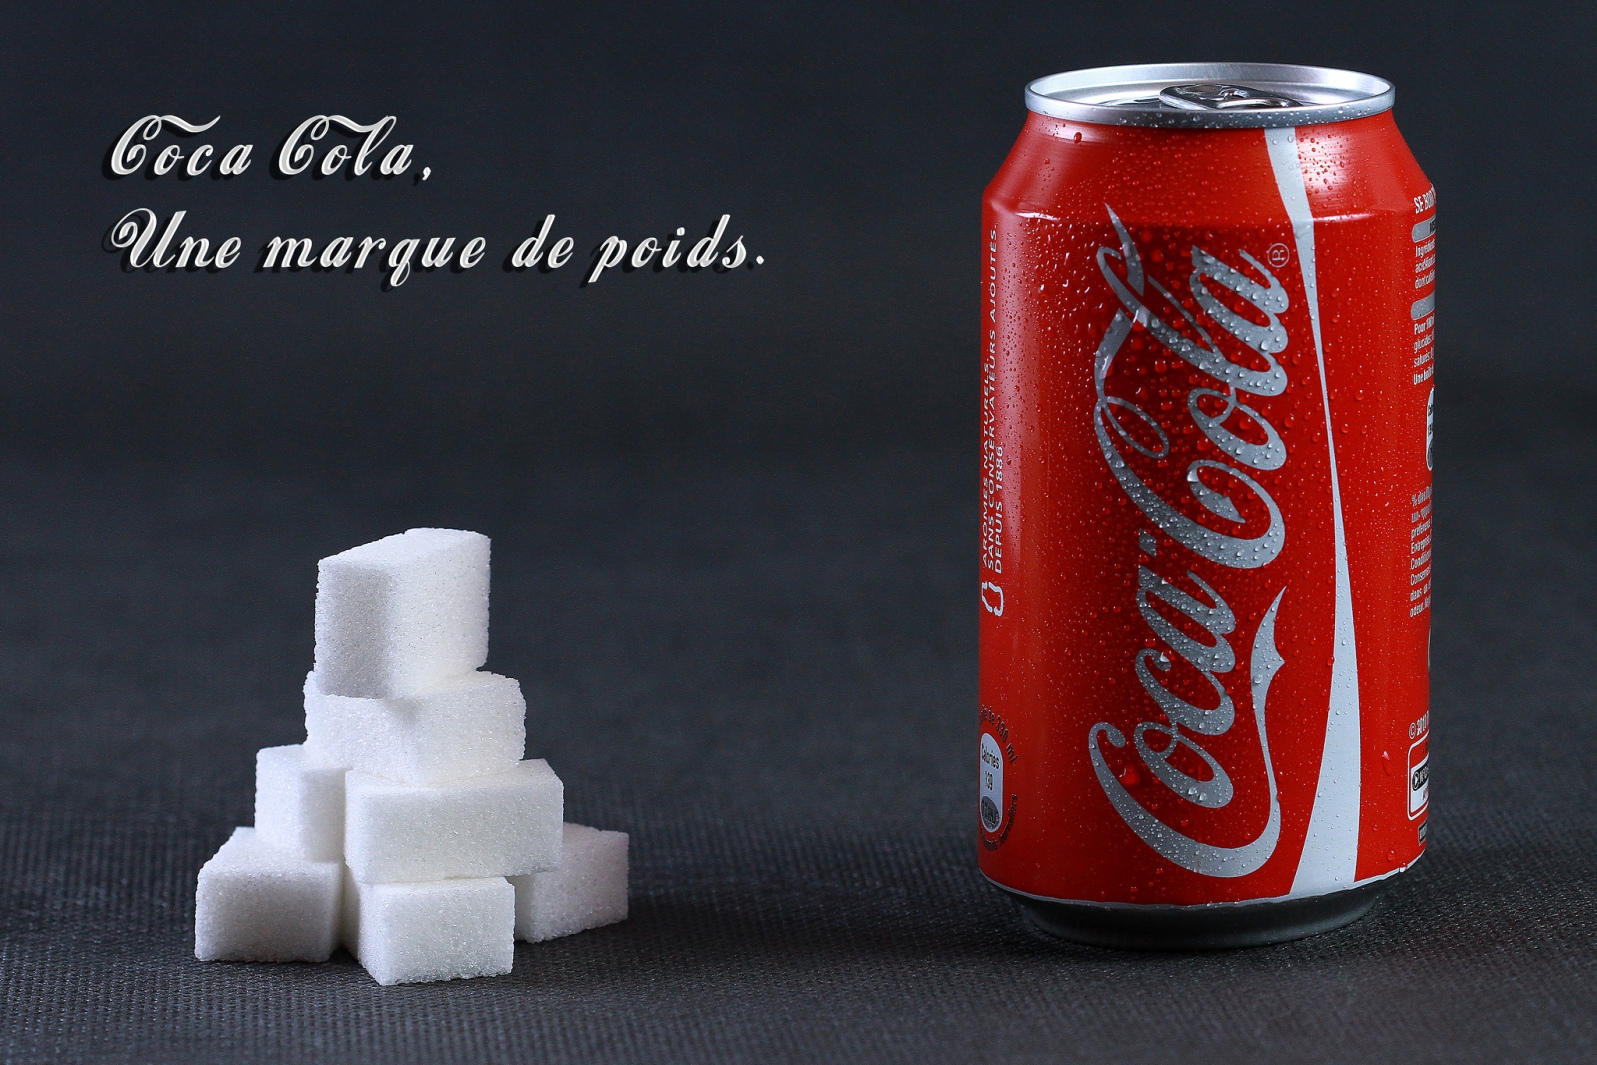 La relation entre la marque Coca-Cola et le sucre